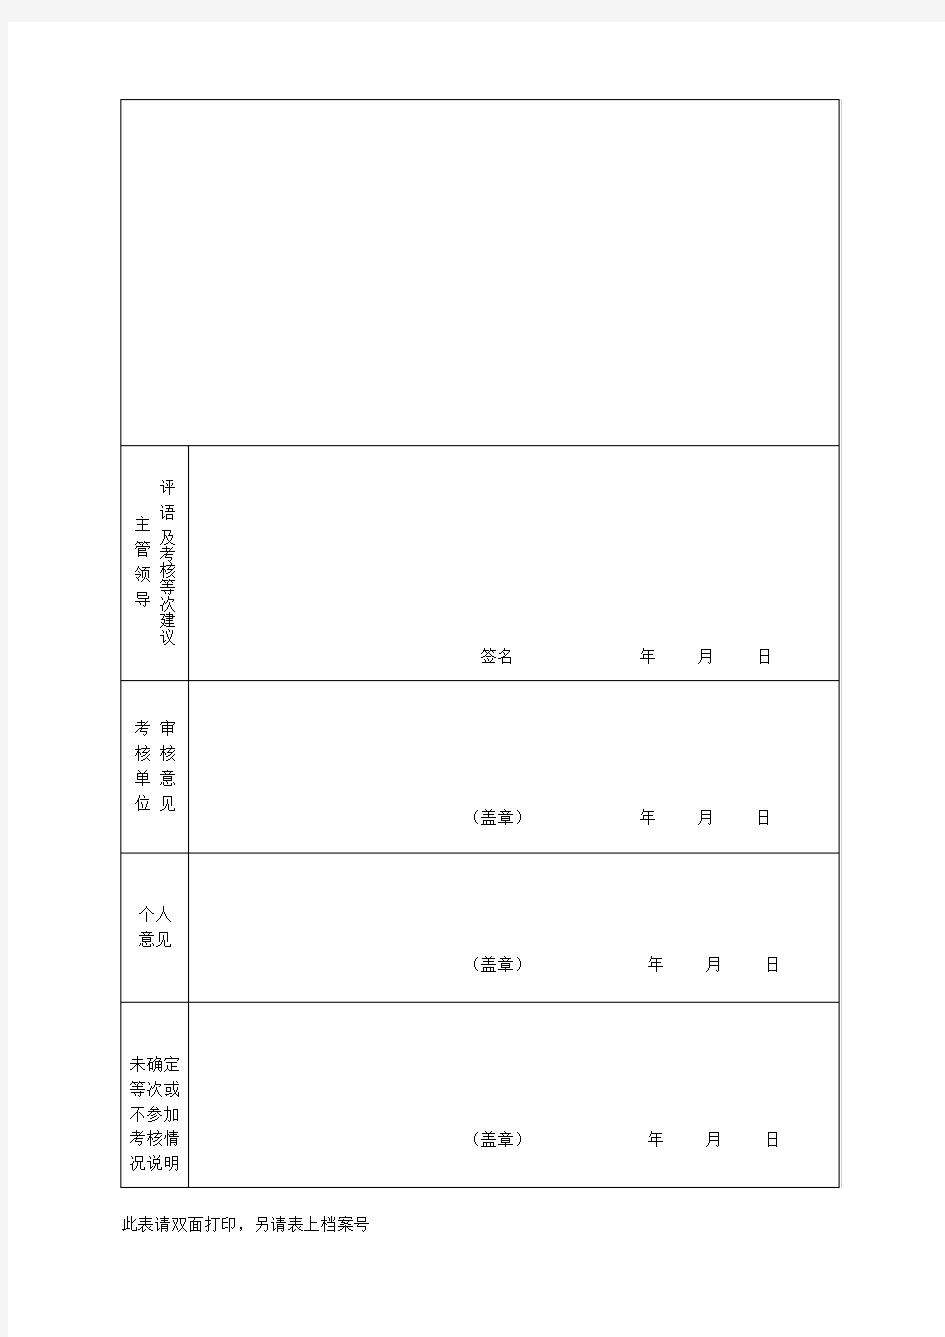 黄山市事业单位工作人员年度考核登记表(附件2)